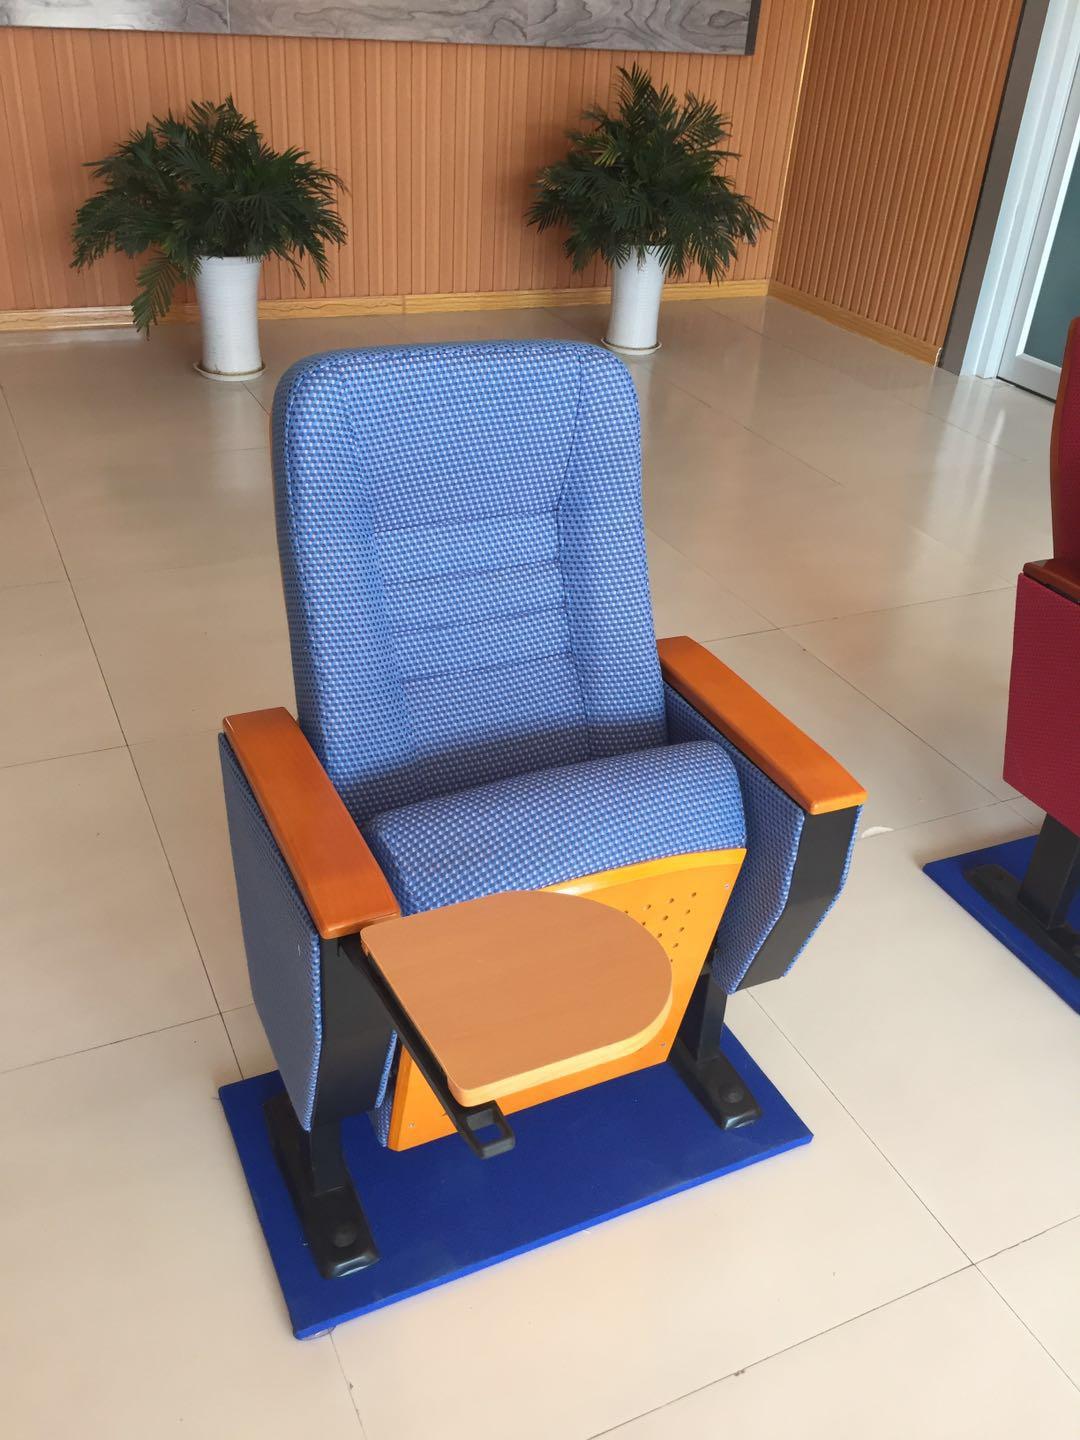 湖北恩施礼堂椅 会议室连排座椅 质量好 做客户放心